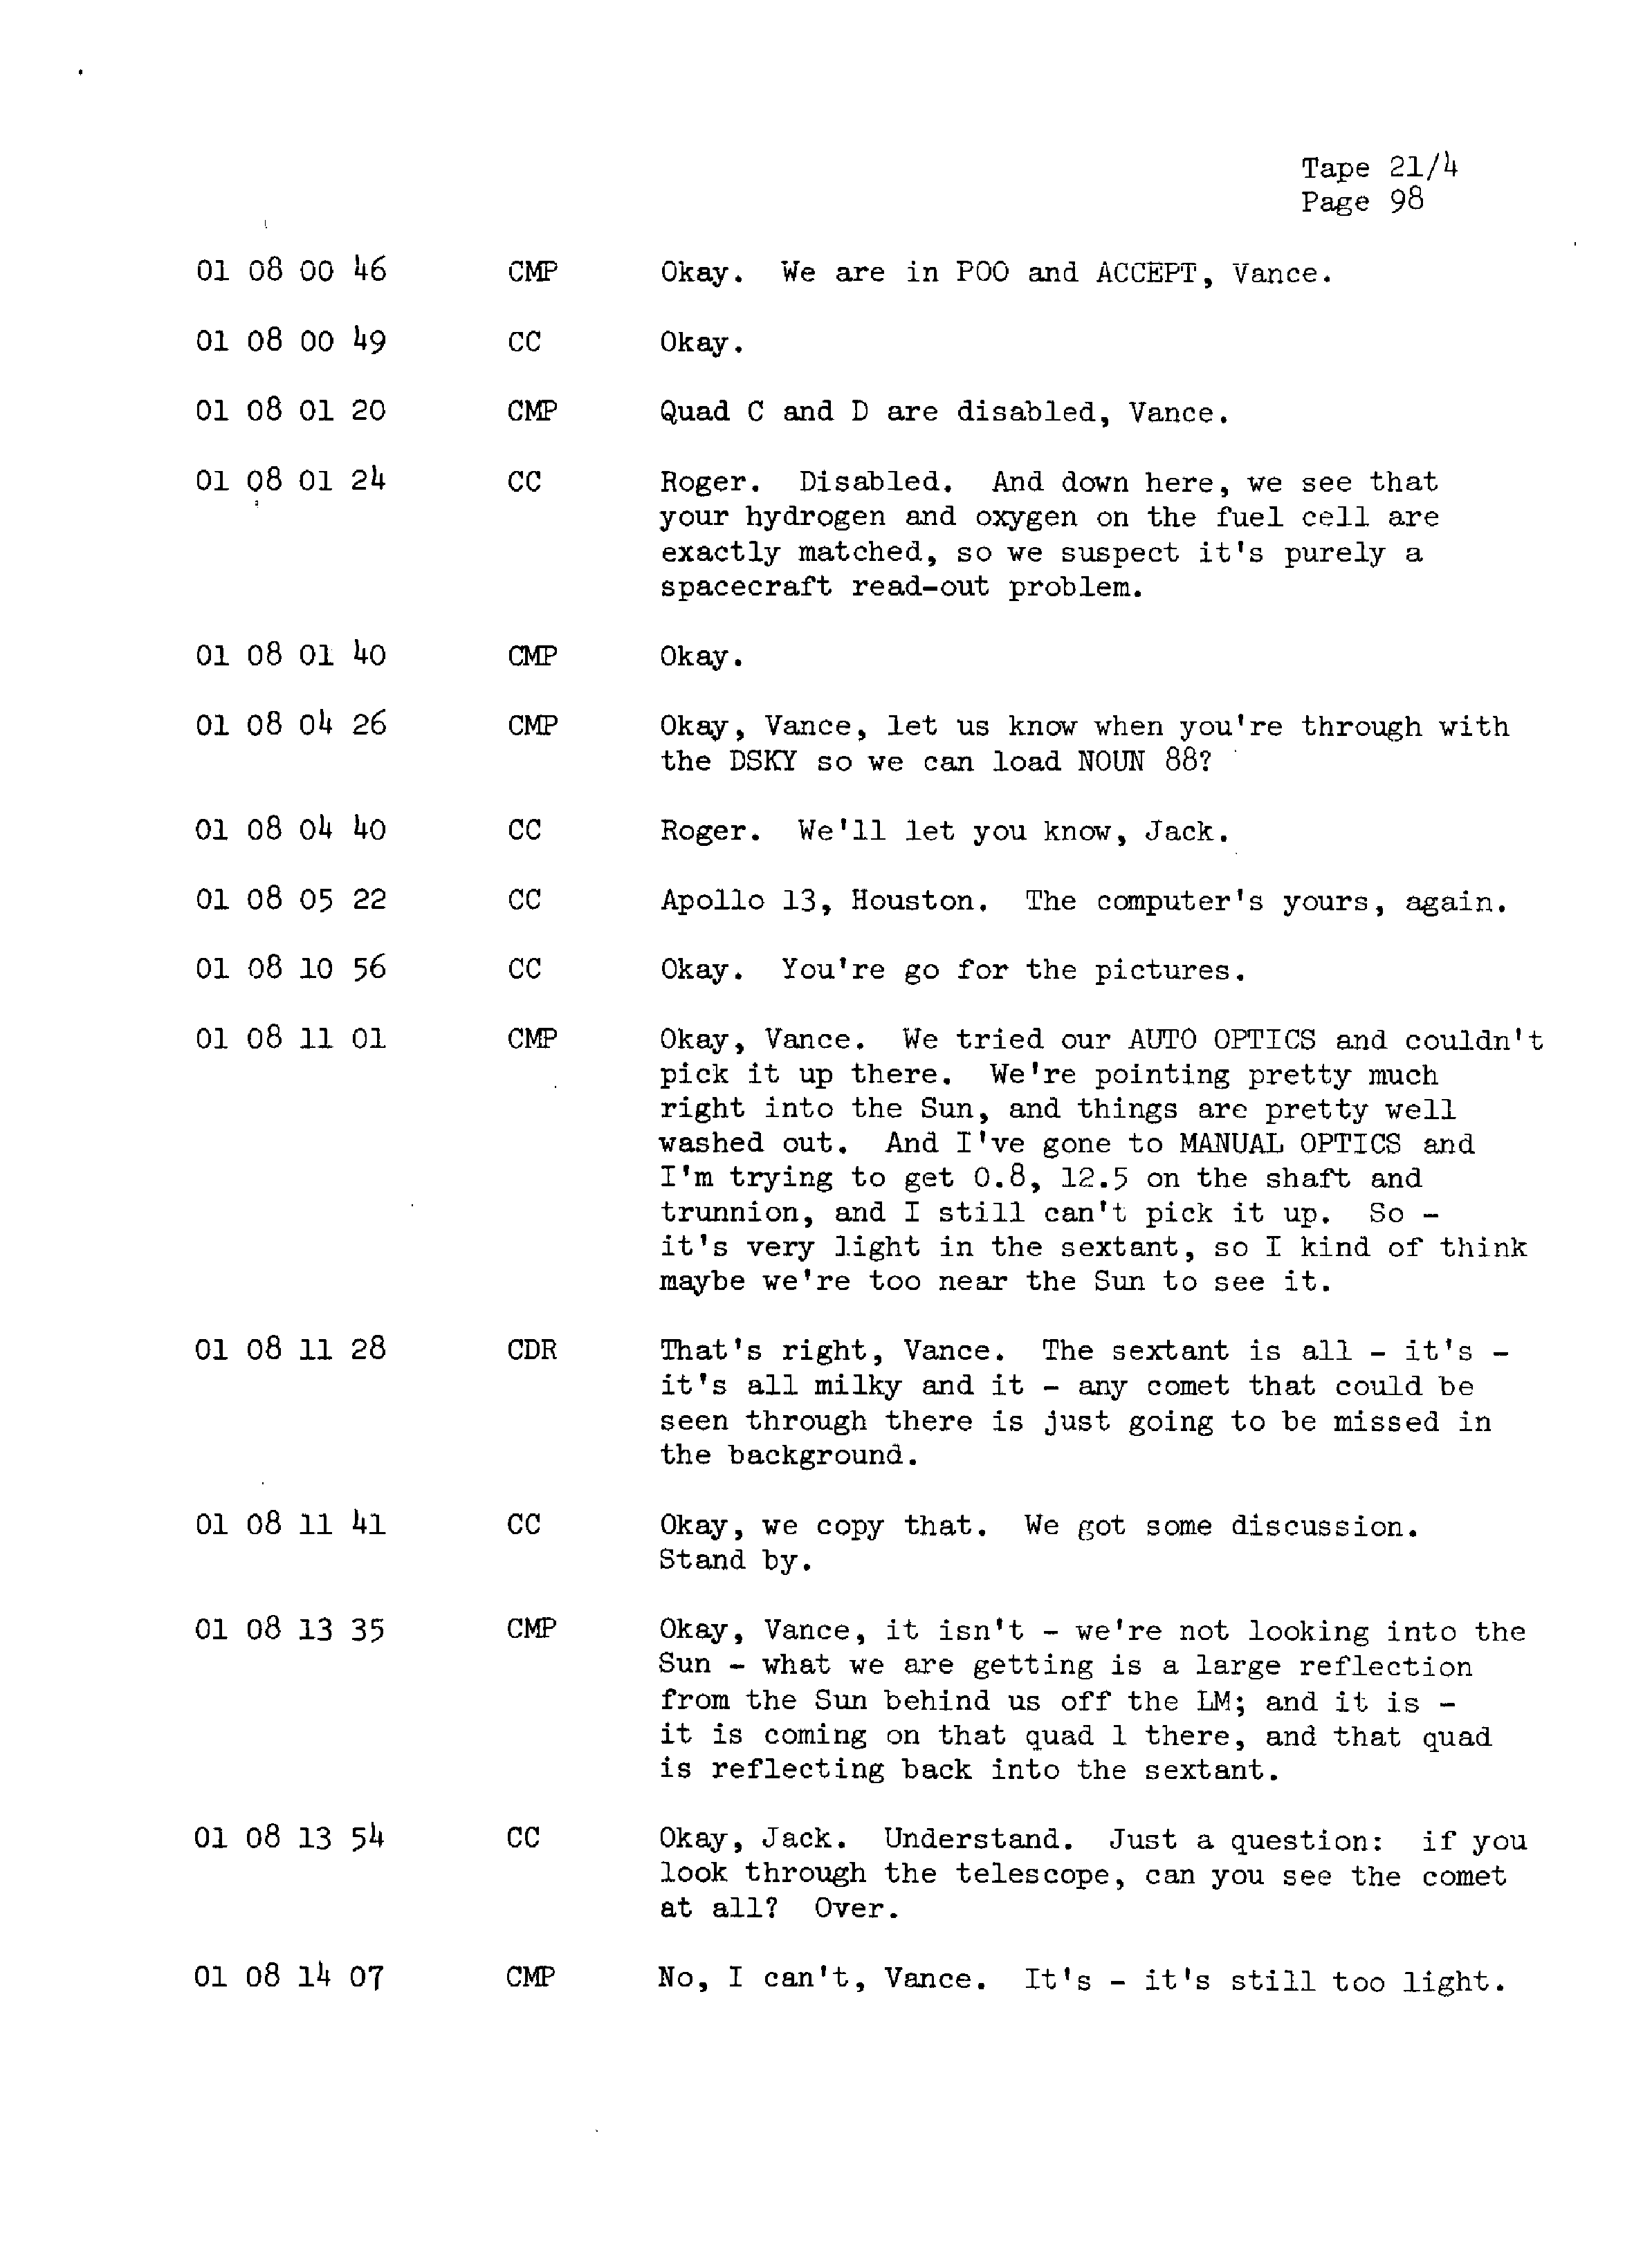 Page 105 of Apollo 13’s original transcript